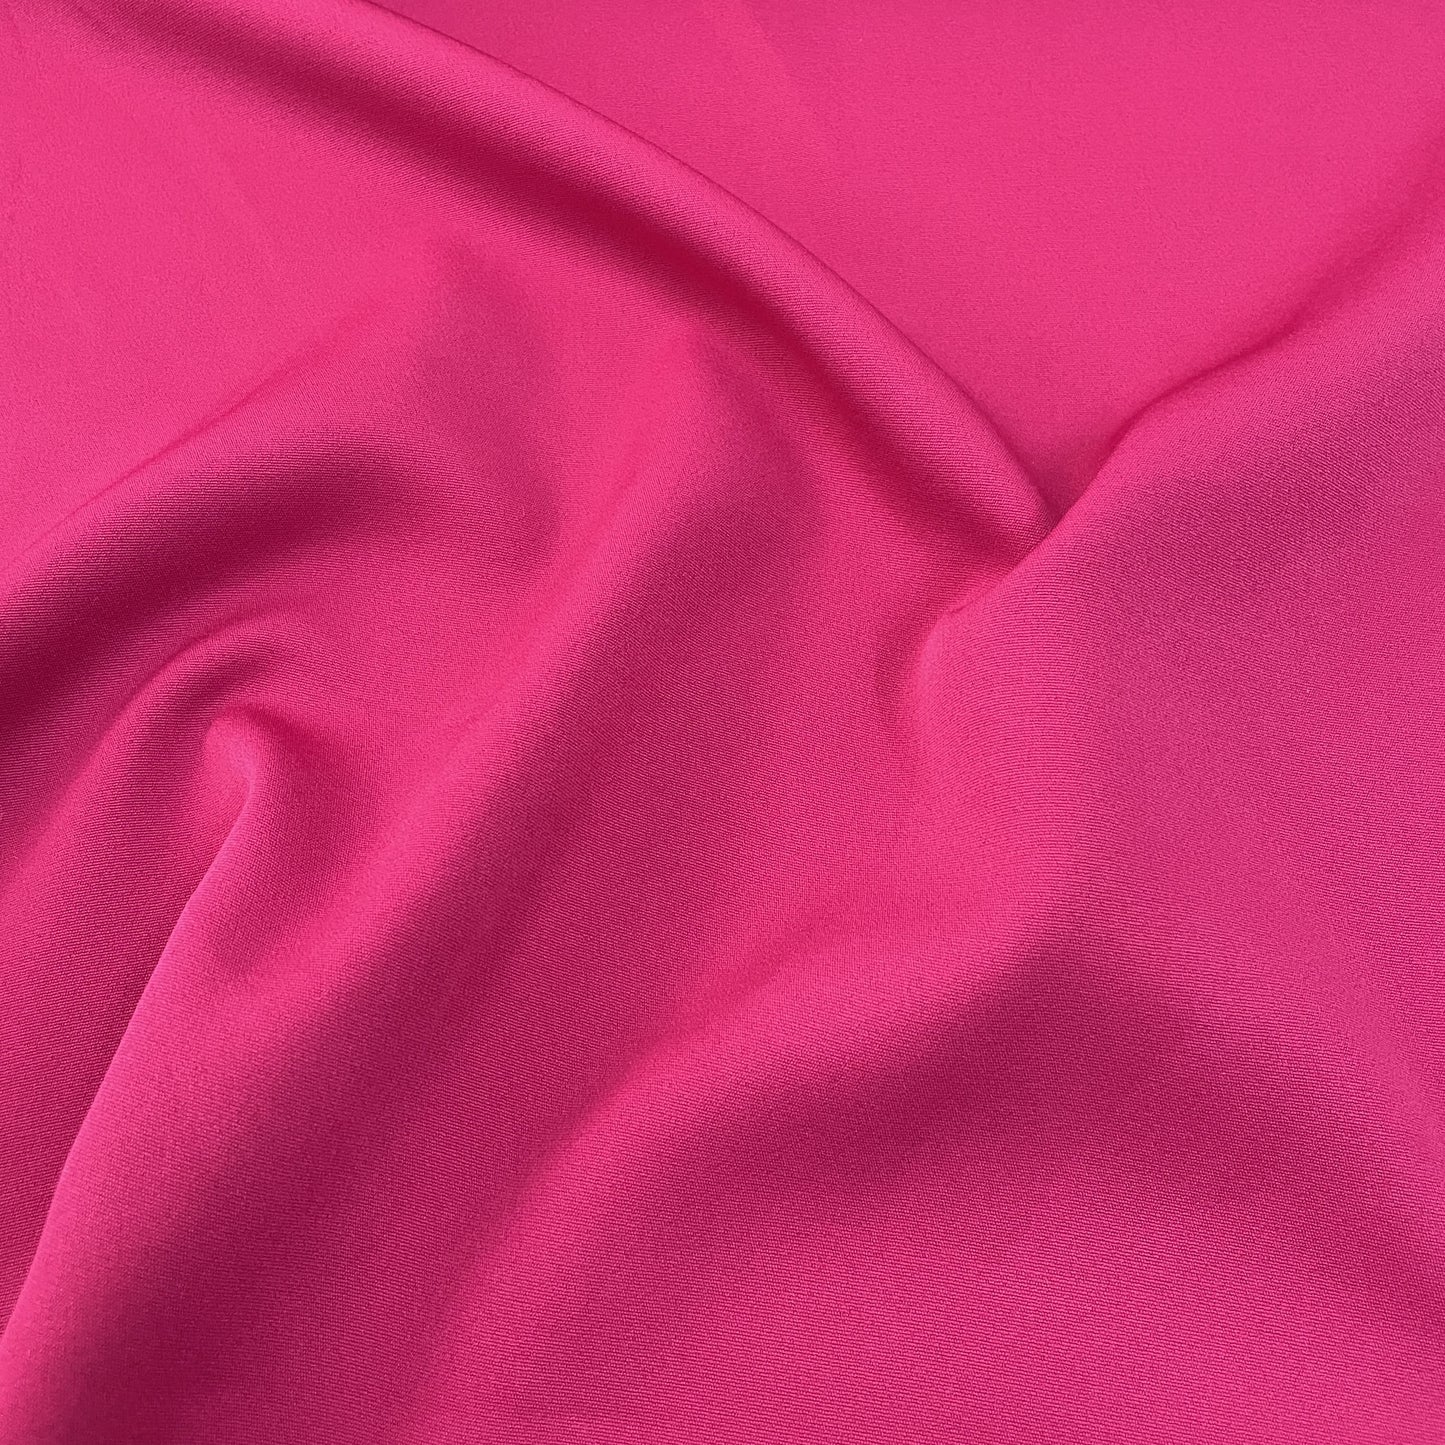 Premium Magenta Pink Solid Banana Crepe Fabric